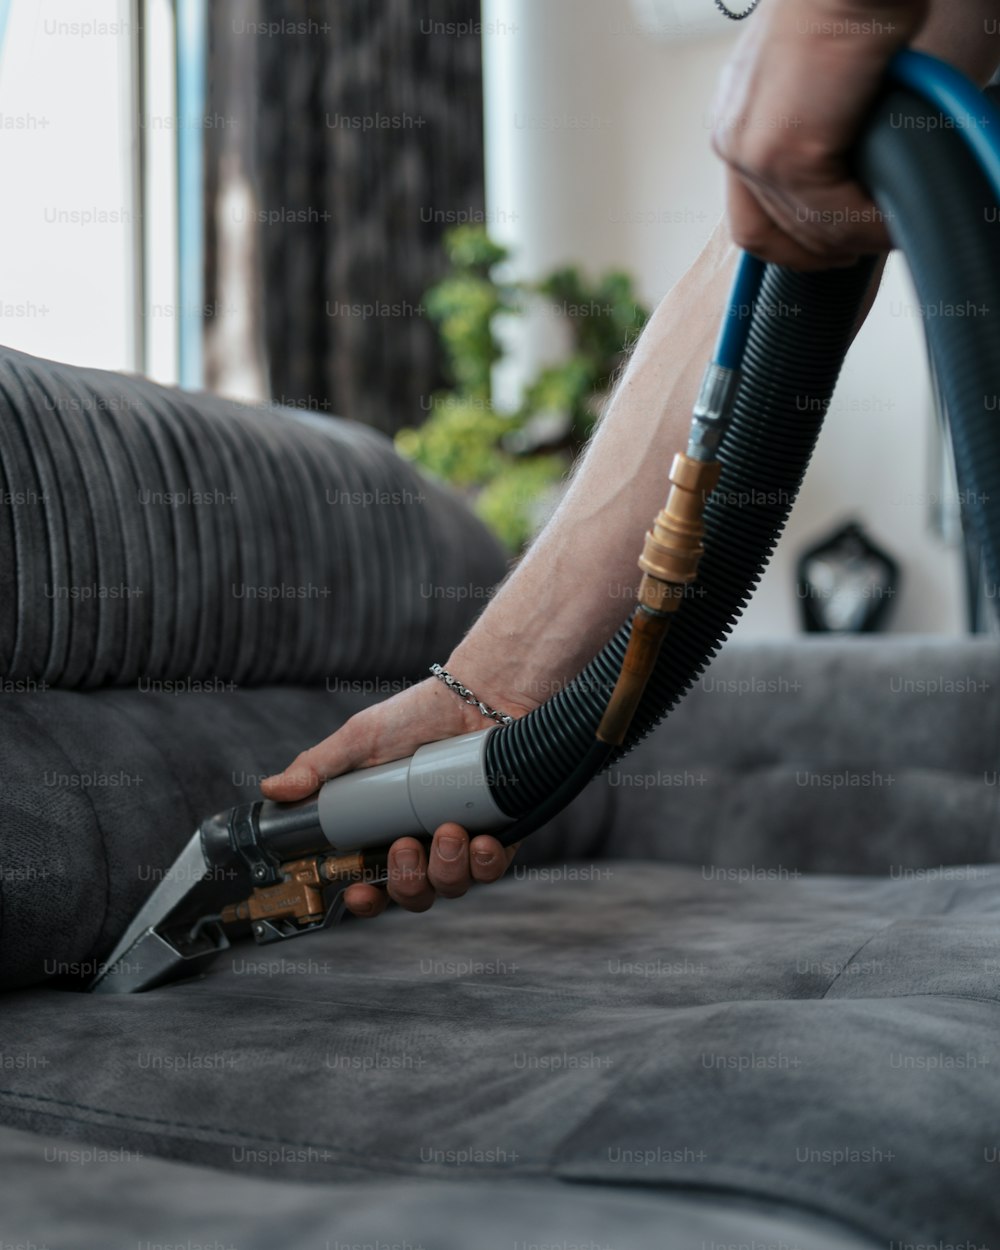 Foto Una persona que usa una aspiradora para limpiar un sofá – Limpieza  Imagen en Unsplash